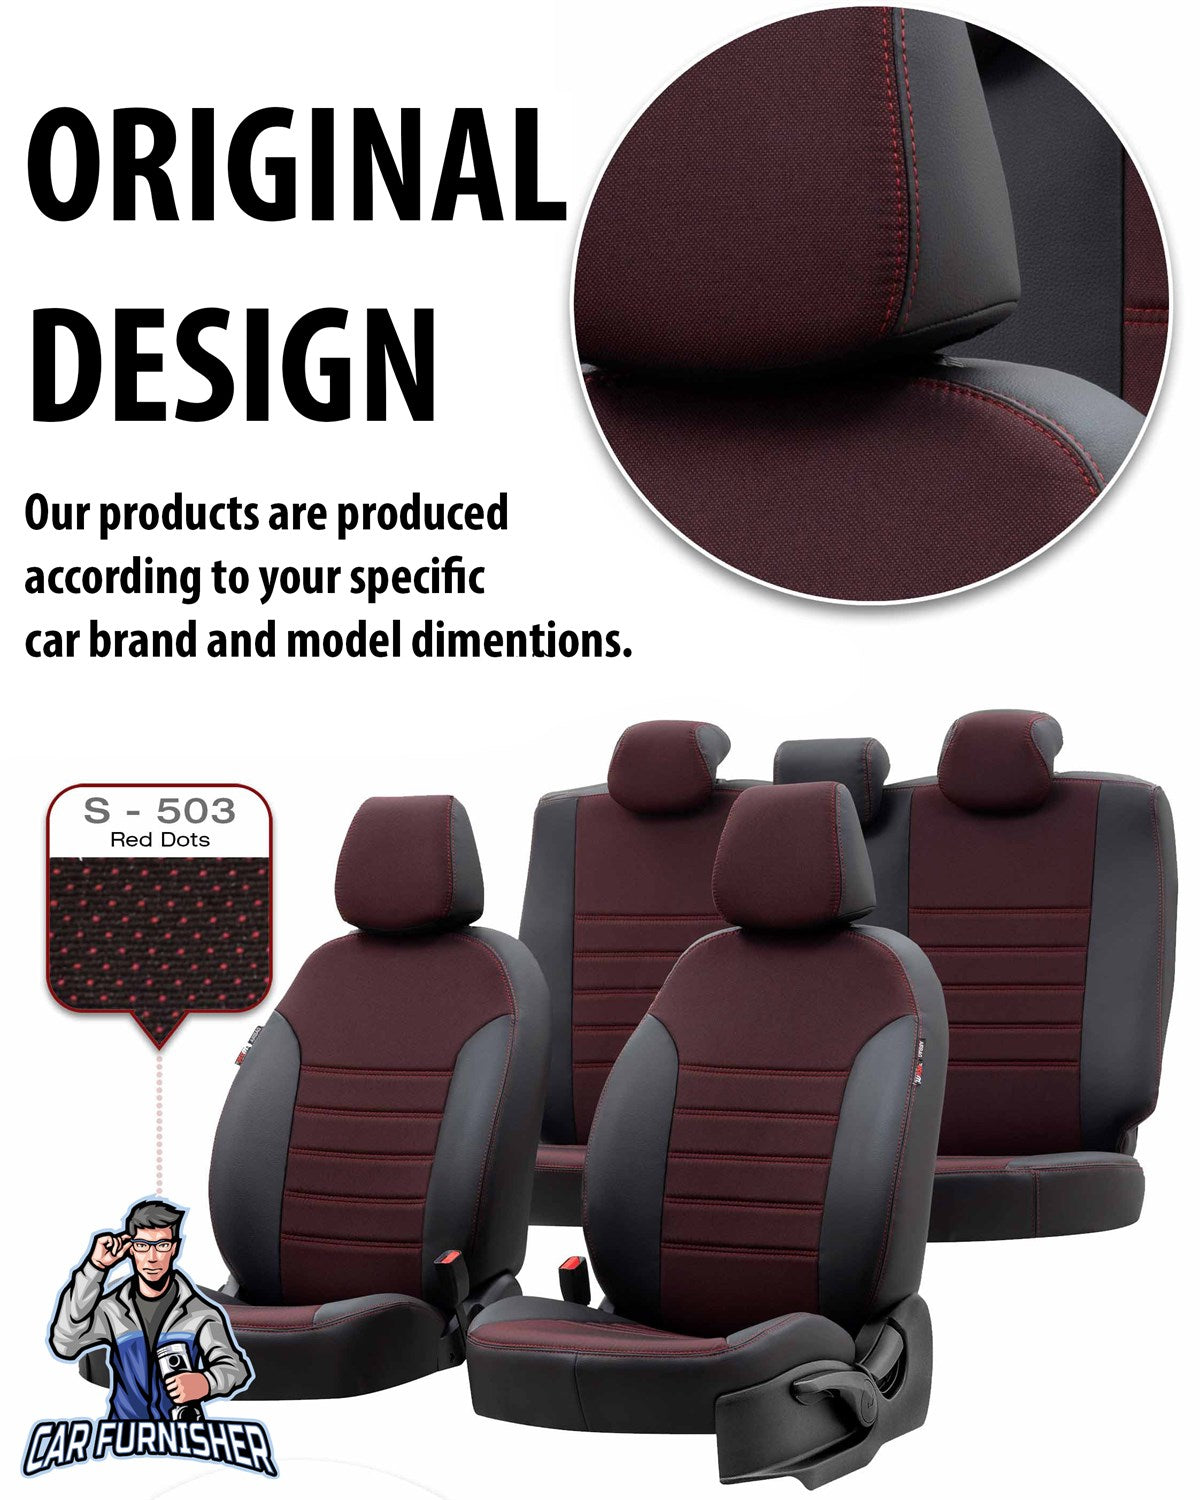 Audi Q5 Seat Cover Paris Leather & Jacquard Design Dark Beige Leather & Jacquard Fabric